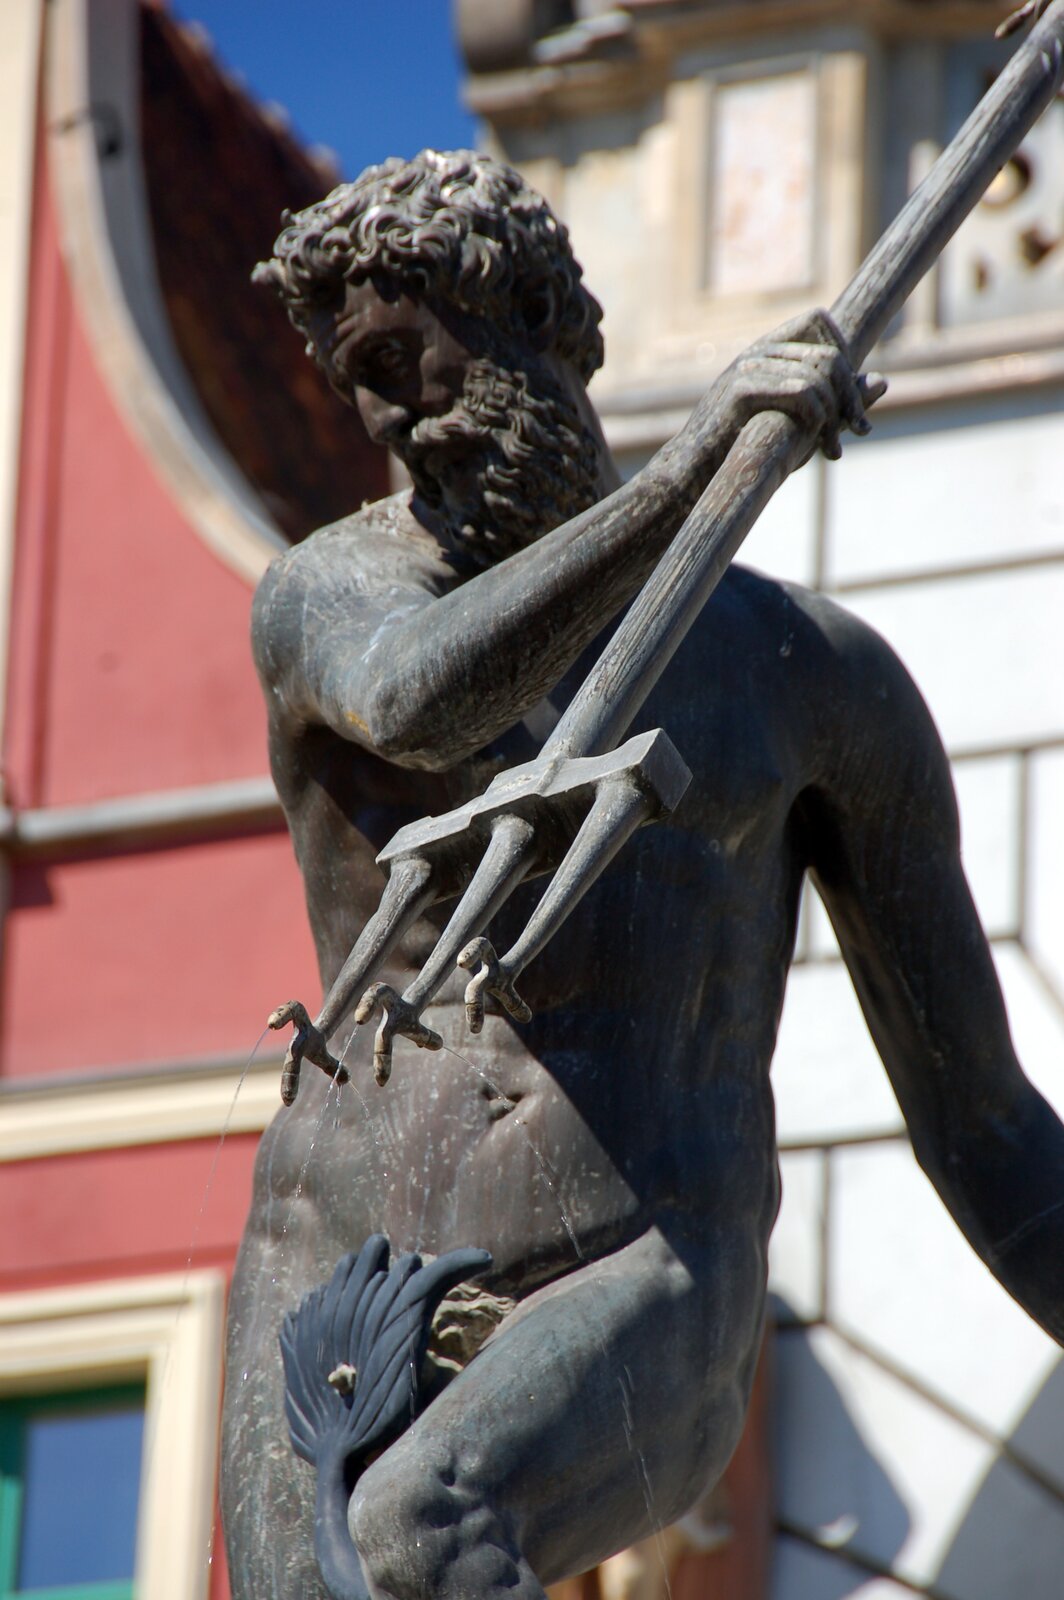 Ilustracja przedstawia posąg Neptuna zdobiący fontannę w Gdańsku. Rzeźba wykonana jest z ciemnego kamienia. Bóg ukazany jest w ruchu. Lewą rękę ma skierowaną do tyłu; w prawej unosi do góry trójząb. Głowę ma przechyloną w bok. Lewe kolano ma lekko uniesione dla zachowania równowagi